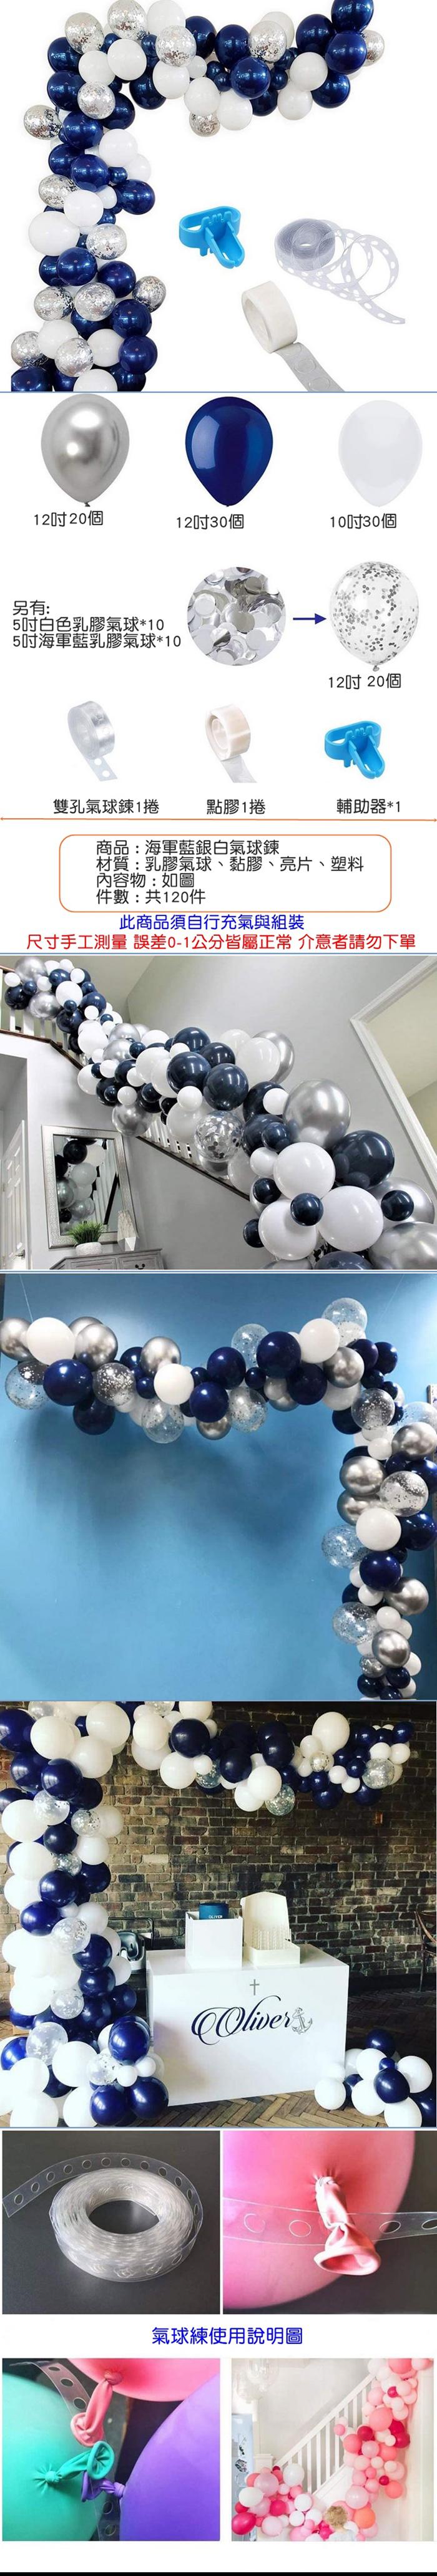 裝飾佈置-海軍藍銀白120pcs氣球鍊組- PChome 商店街